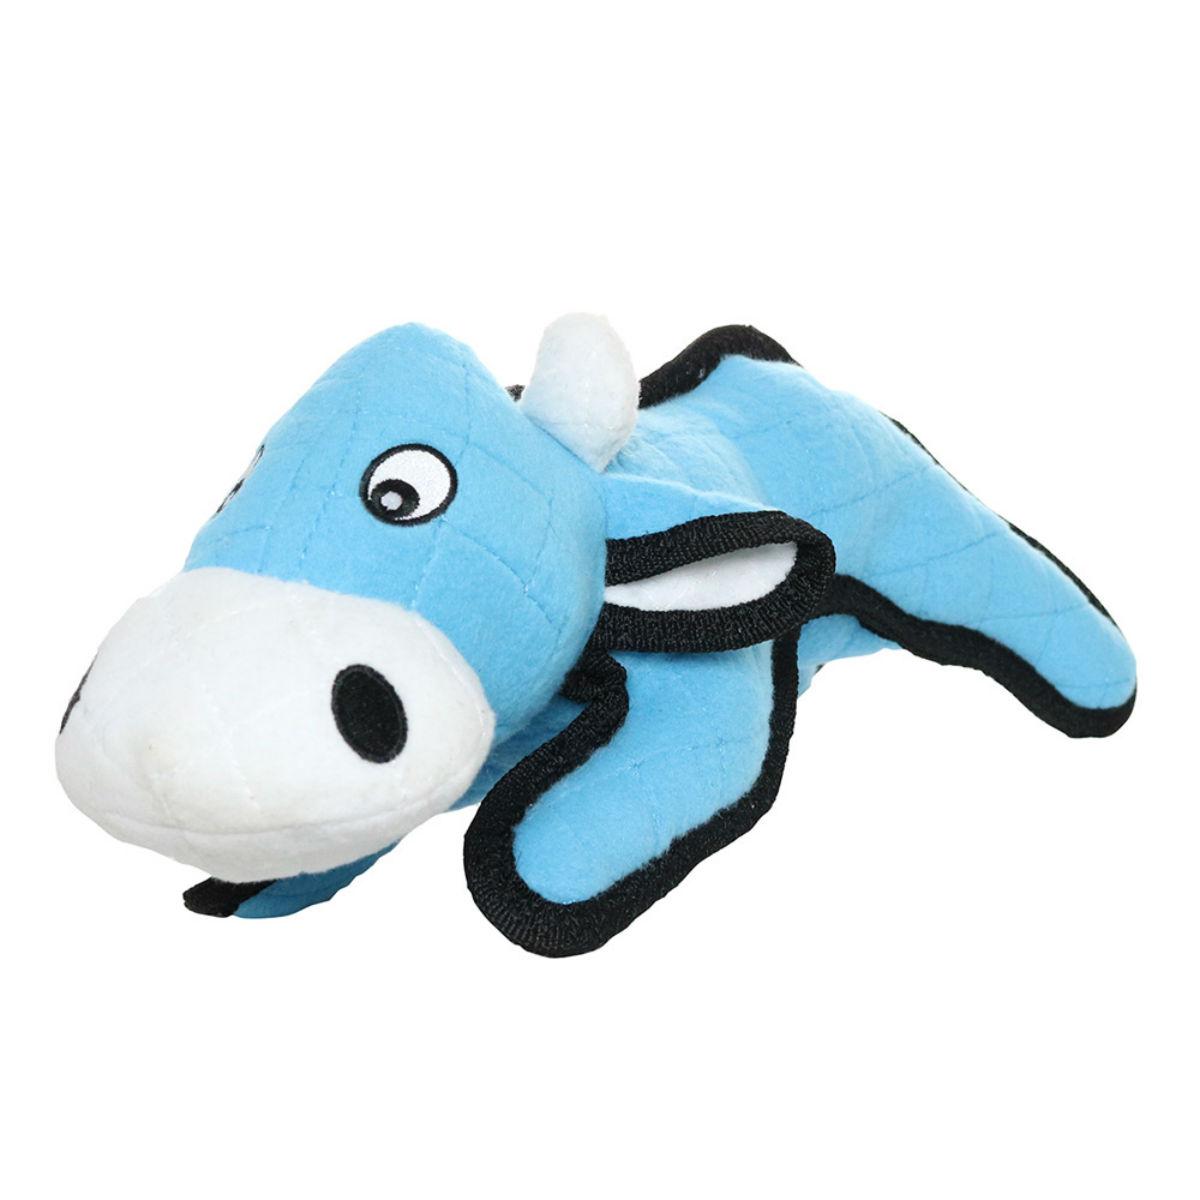 Tuffy Barnyard Series Dog Toy - Blue Cow